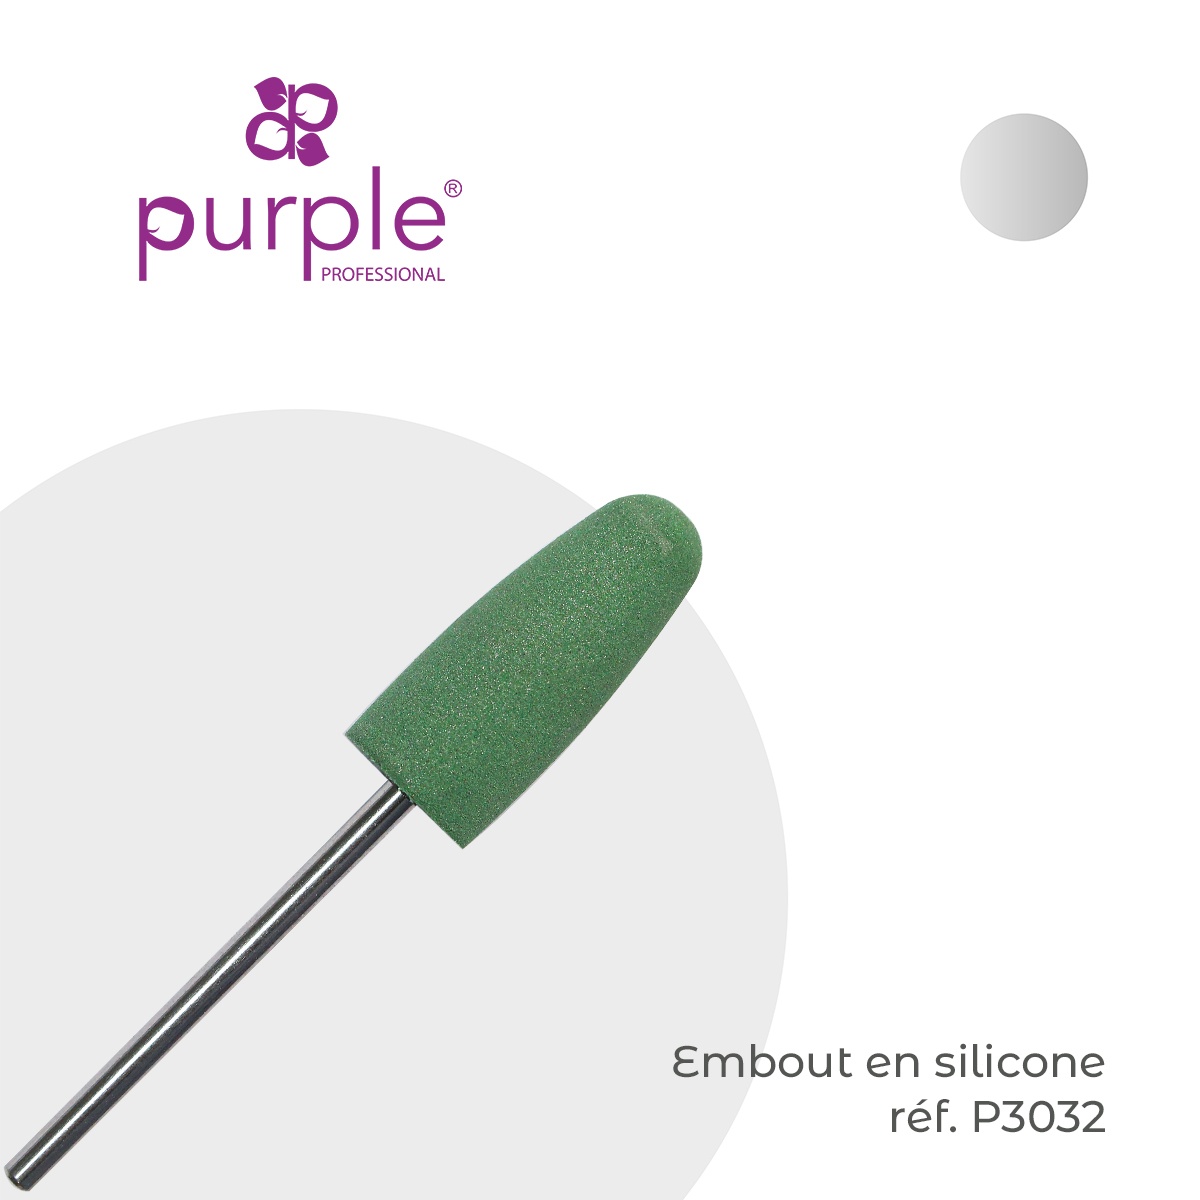 Embout en silicone pour gommer les peaux - Purple - Fraise Nail Shop